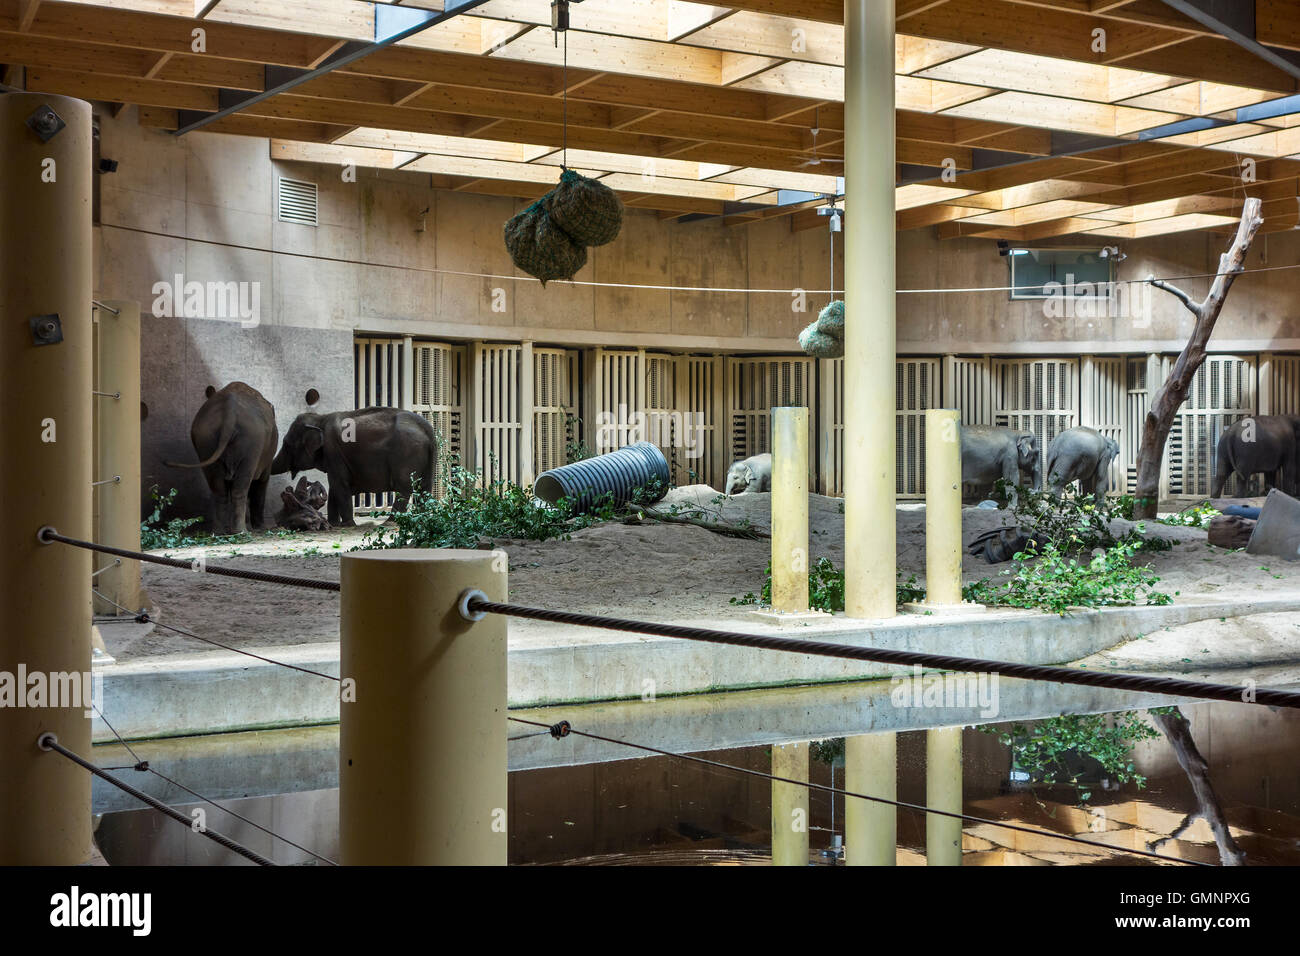 Les éléphants d'Asie / l'éléphant d'Asie (Elephas maximus) à l'intérieur de l'enclos au zoo de Planckendael, Belgique Banque D'Images